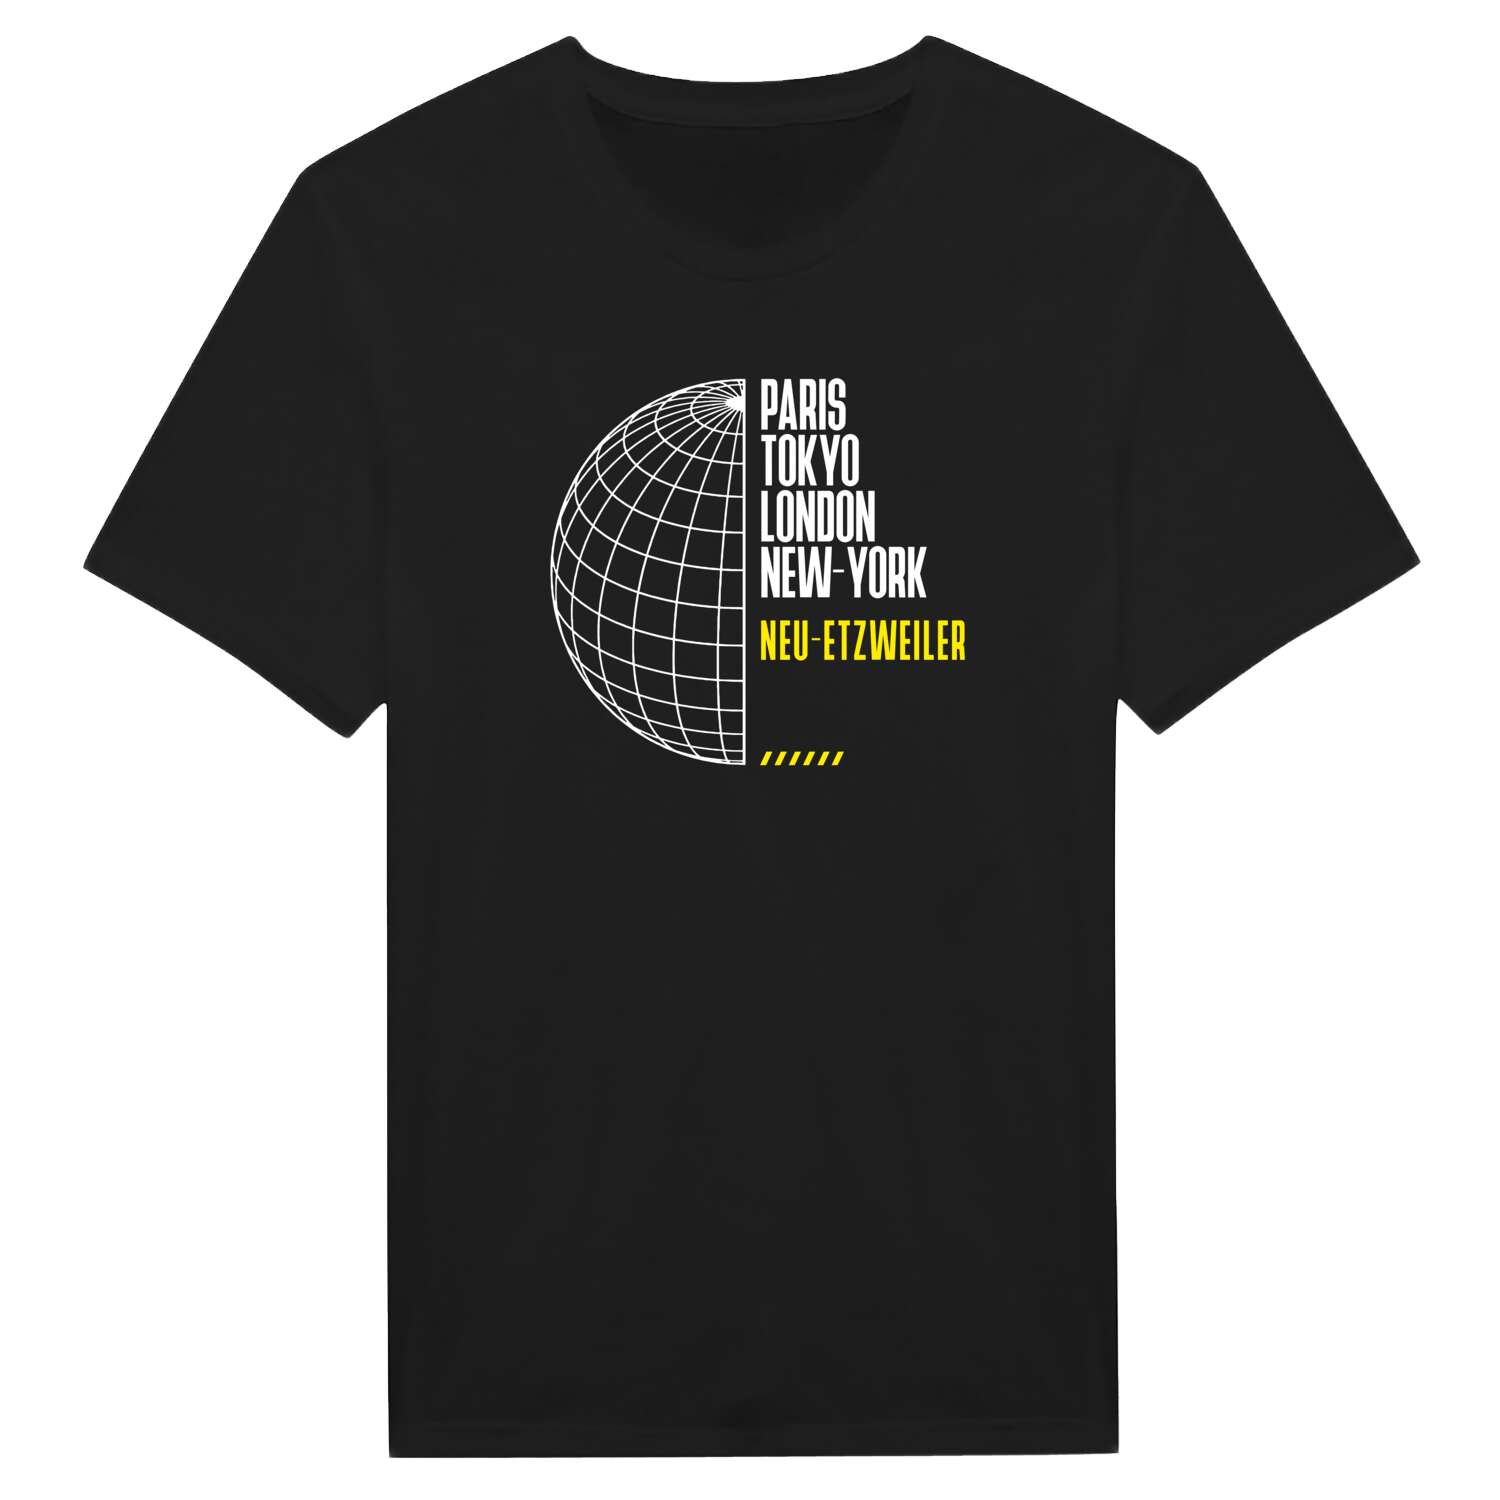 Neu-Etzweiler T-Shirt »Paris Tokyo London«